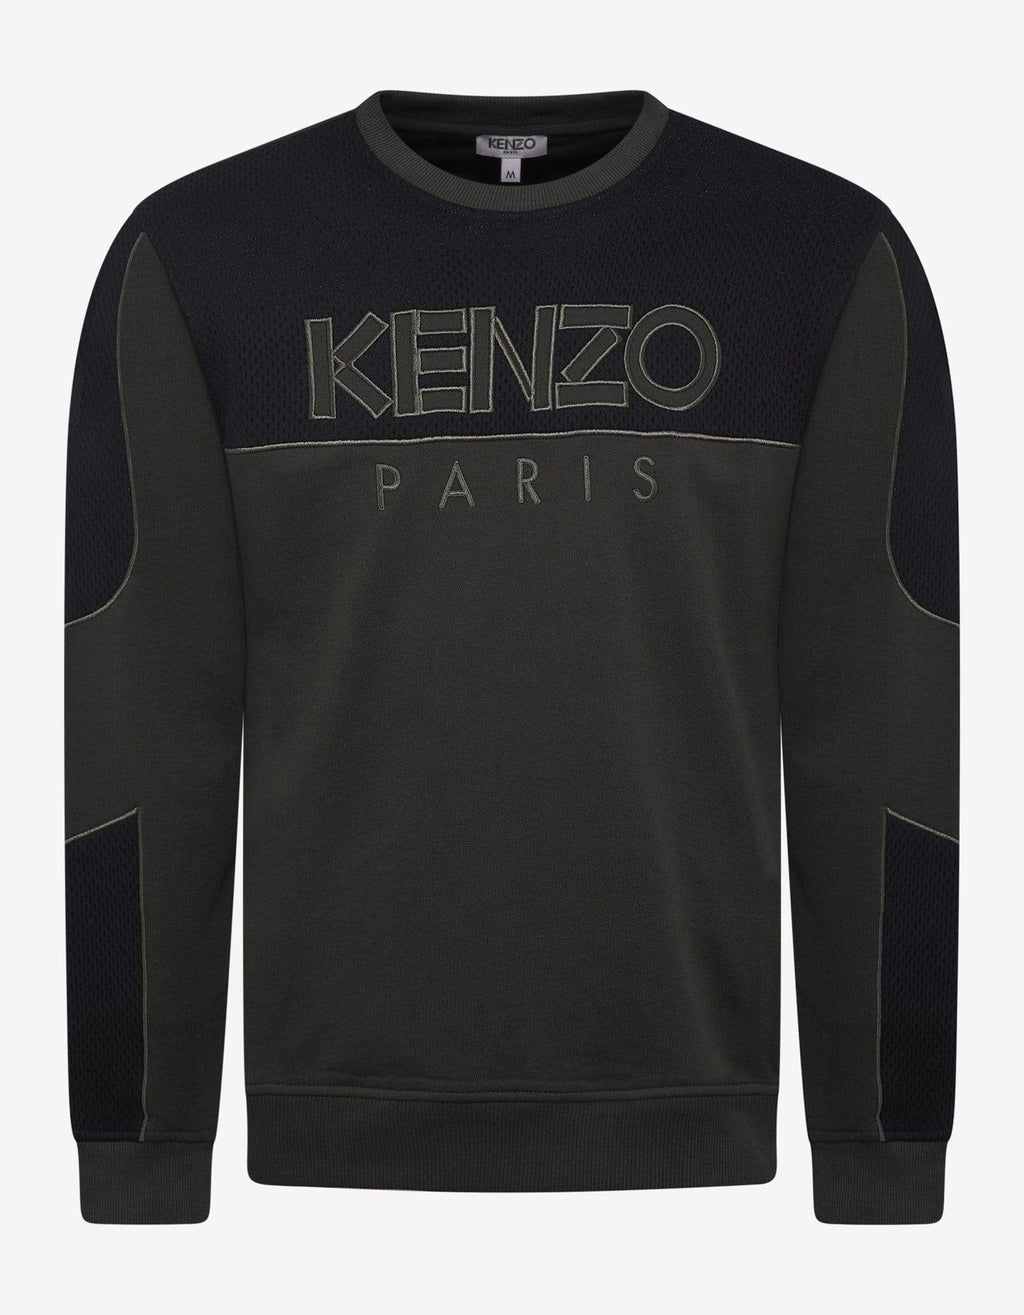 Kenzo Kenzo Khaki Dual-Fabric Sweatshirt